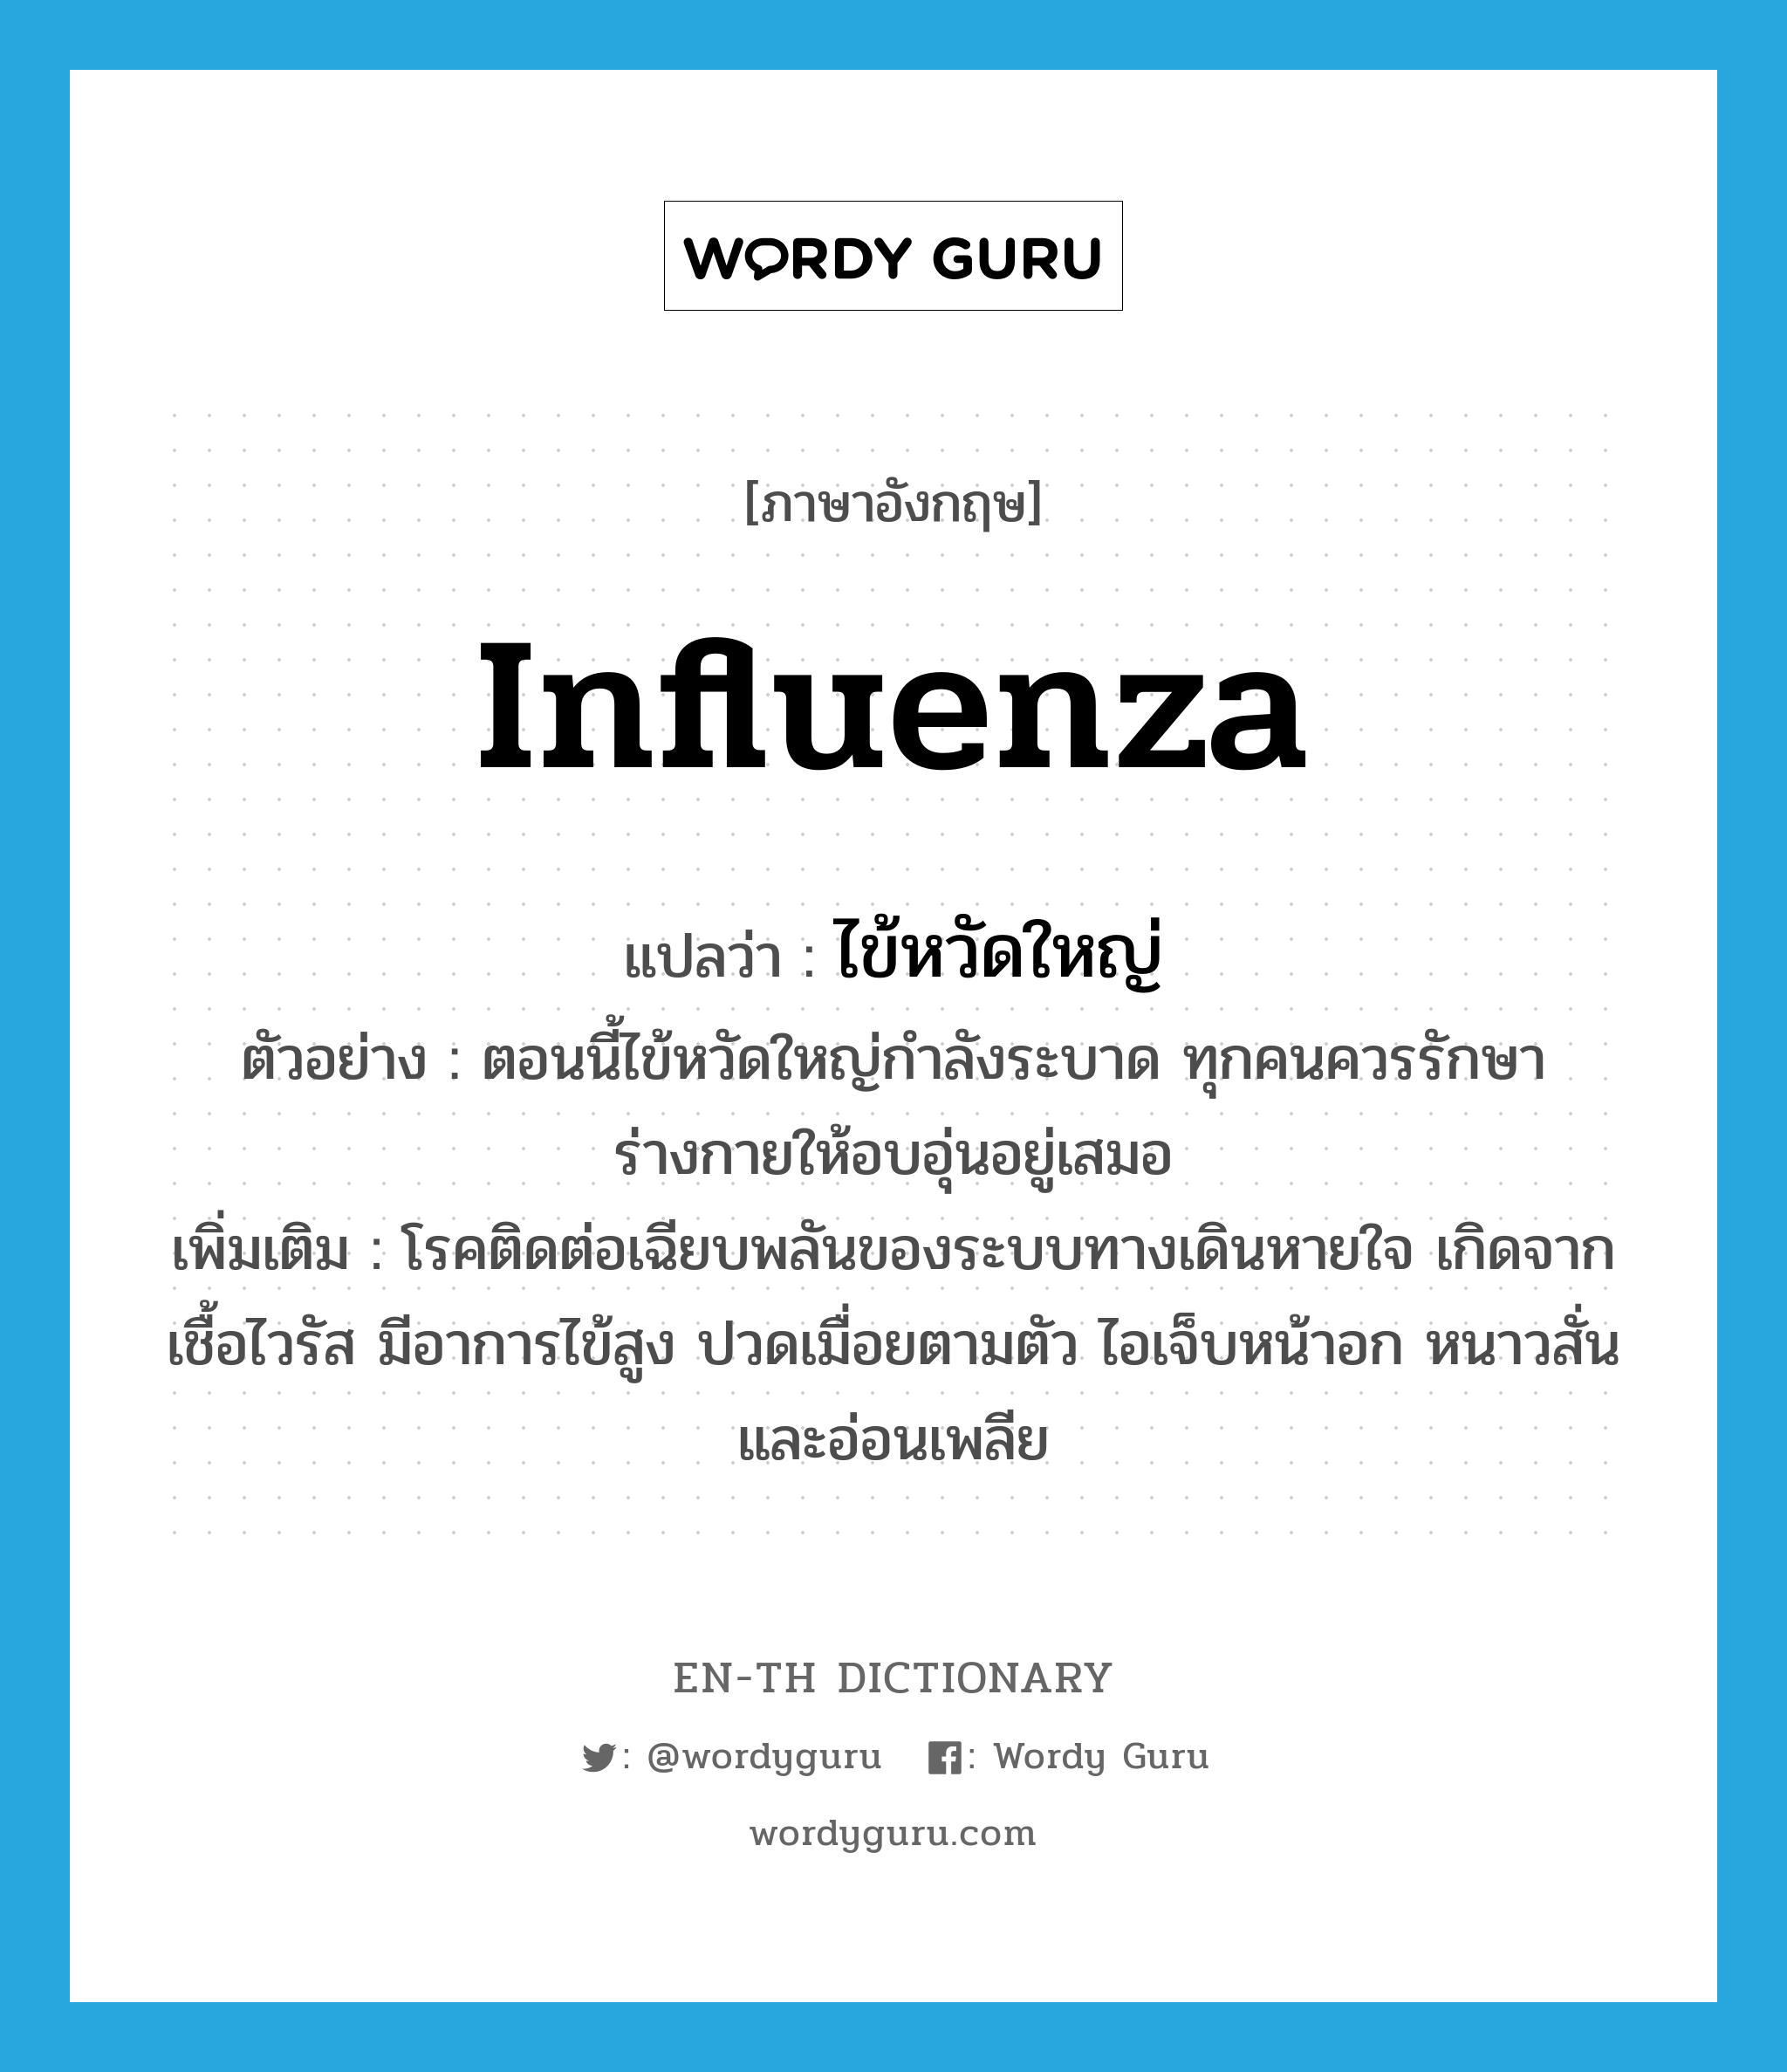 influenza แปลว่า?, คำศัพท์ภาษาอังกฤษ influenza แปลว่า ไข้หวัดใหญ่ ประเภท N ตัวอย่าง ตอนนี้ไข้หวัดใหญ่กำลังระบาด ทุกคนควรรักษาร่างกายให้อบอุ่นอยู่เสมอ เพิ่มเติม โรคติดต่อเฉียบพลันของระบบทางเดินหายใจ เกิดจากเชื้อไวรัส มีอาการไข้สูง ปวดเมื่อยตามตัว ไอเจ็บหน้าอก หนาวสั่นและอ่อนเพลีย หมวด N